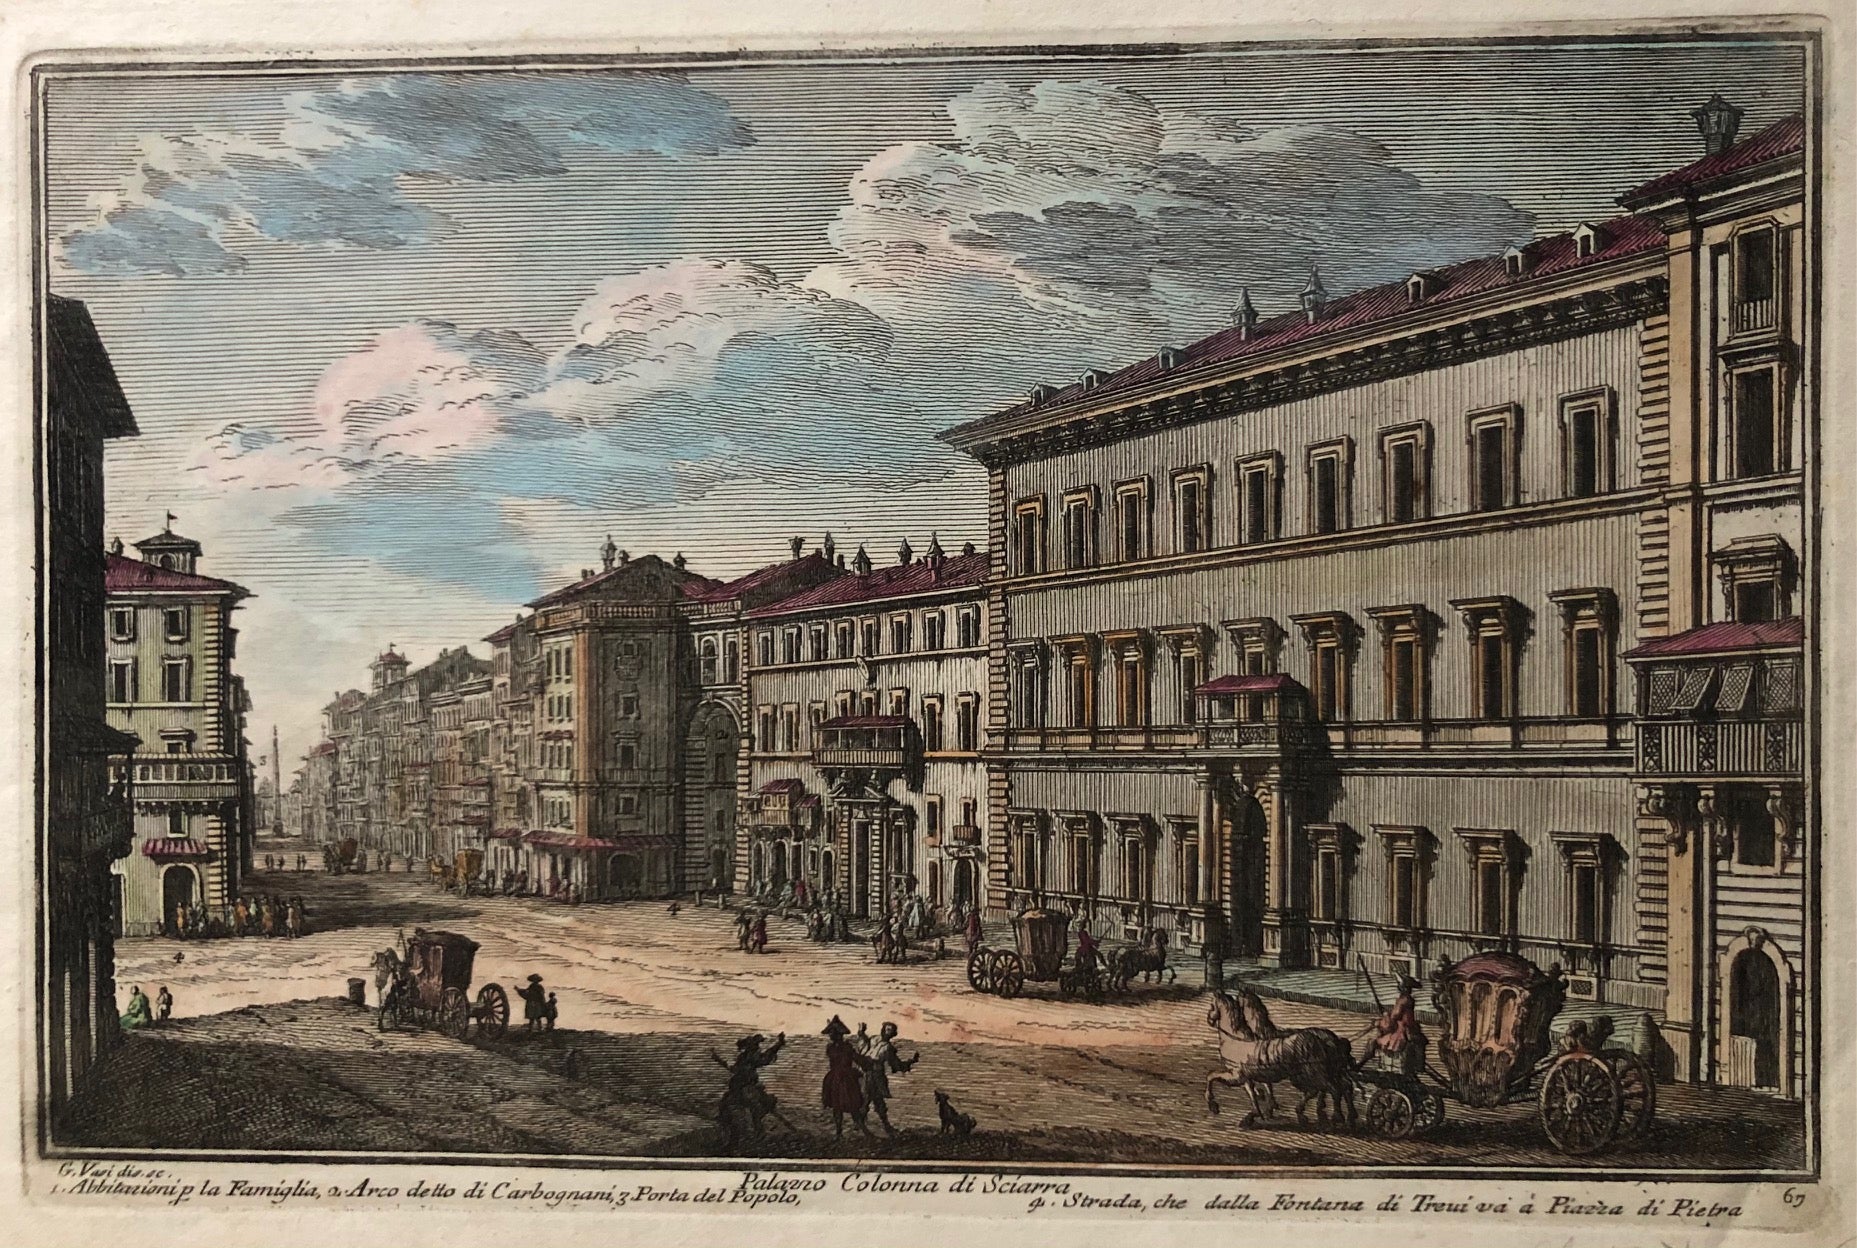 'Palazzo Colonna di Sciarra' . Handcoloured engraving by Guiseppe Vasi showing Palazzo Colonna in Rome. From the series 'Delle magnificenze di Roma antica e modern